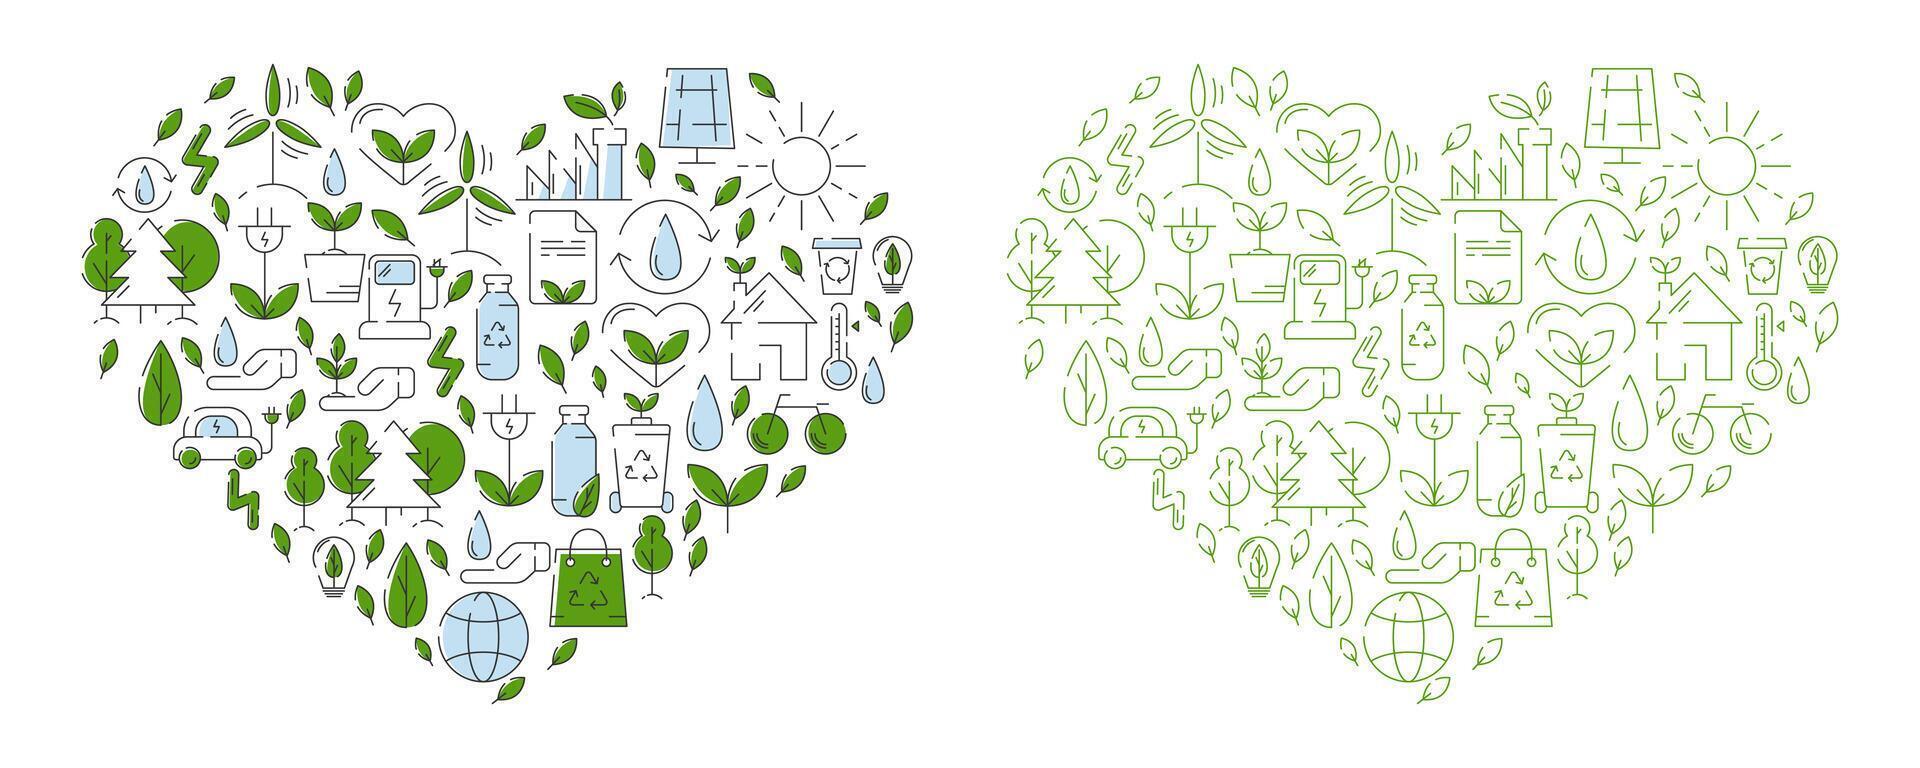 Grün Öko freundlich Herz gefüllt mit Ökologie Symbole und Zeichen. Vektor Illustration, Design Element. Ökologie Konzept, Recycling Nachhaltigkeit, verlängerbar Energie, Netz Null Emissionen durch 2050